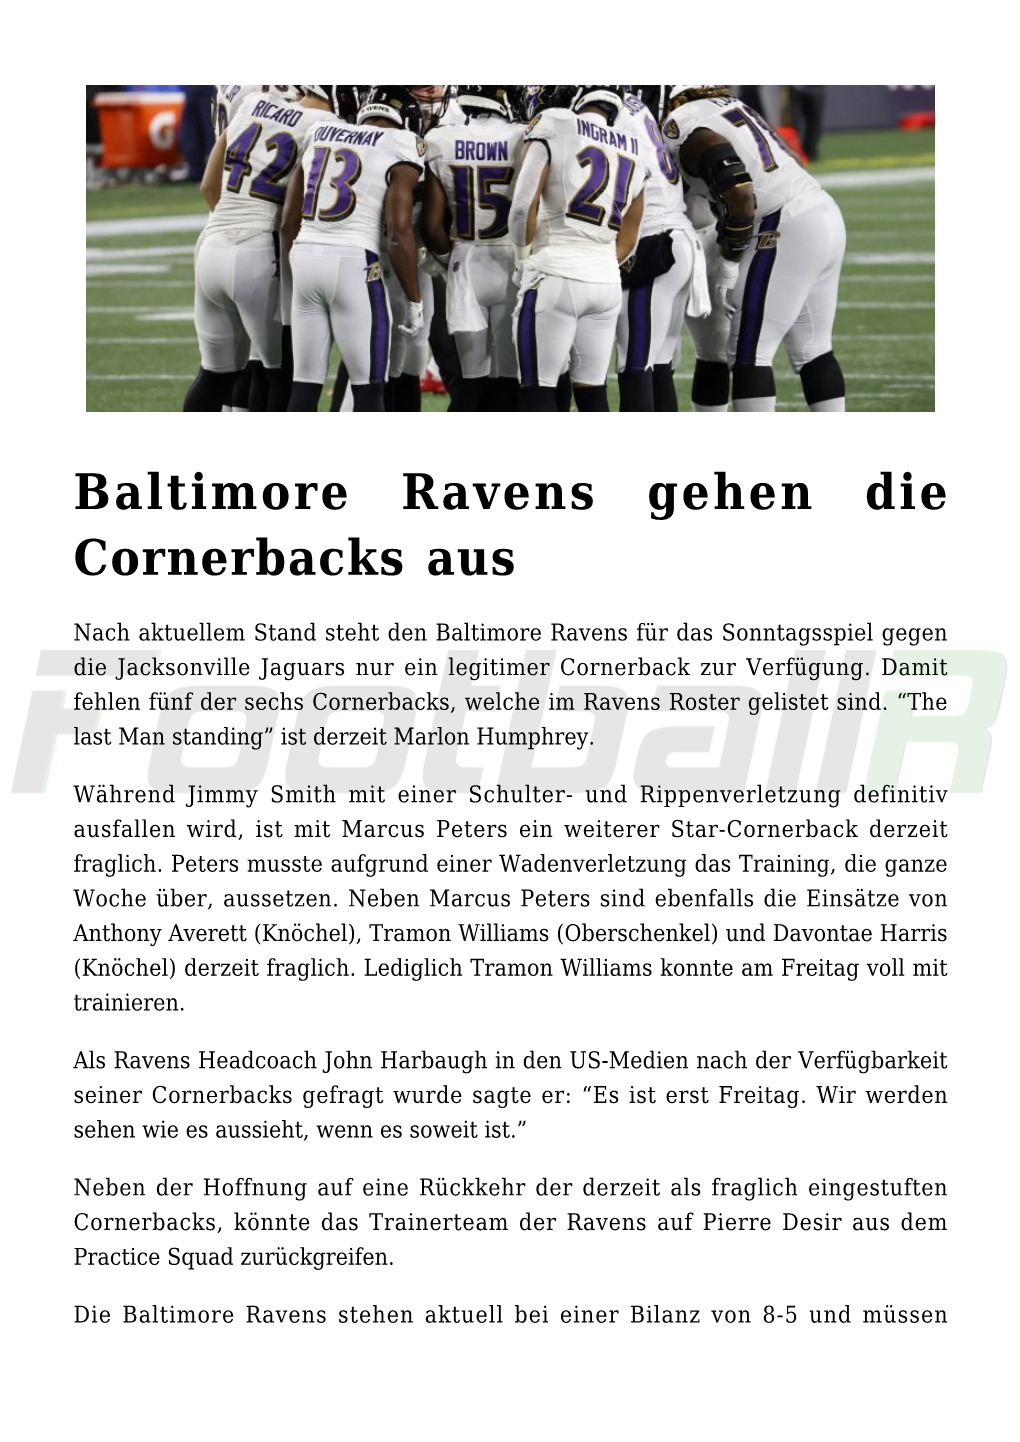 Baltimore Ravens Gehen Die Cornerbacks Aus